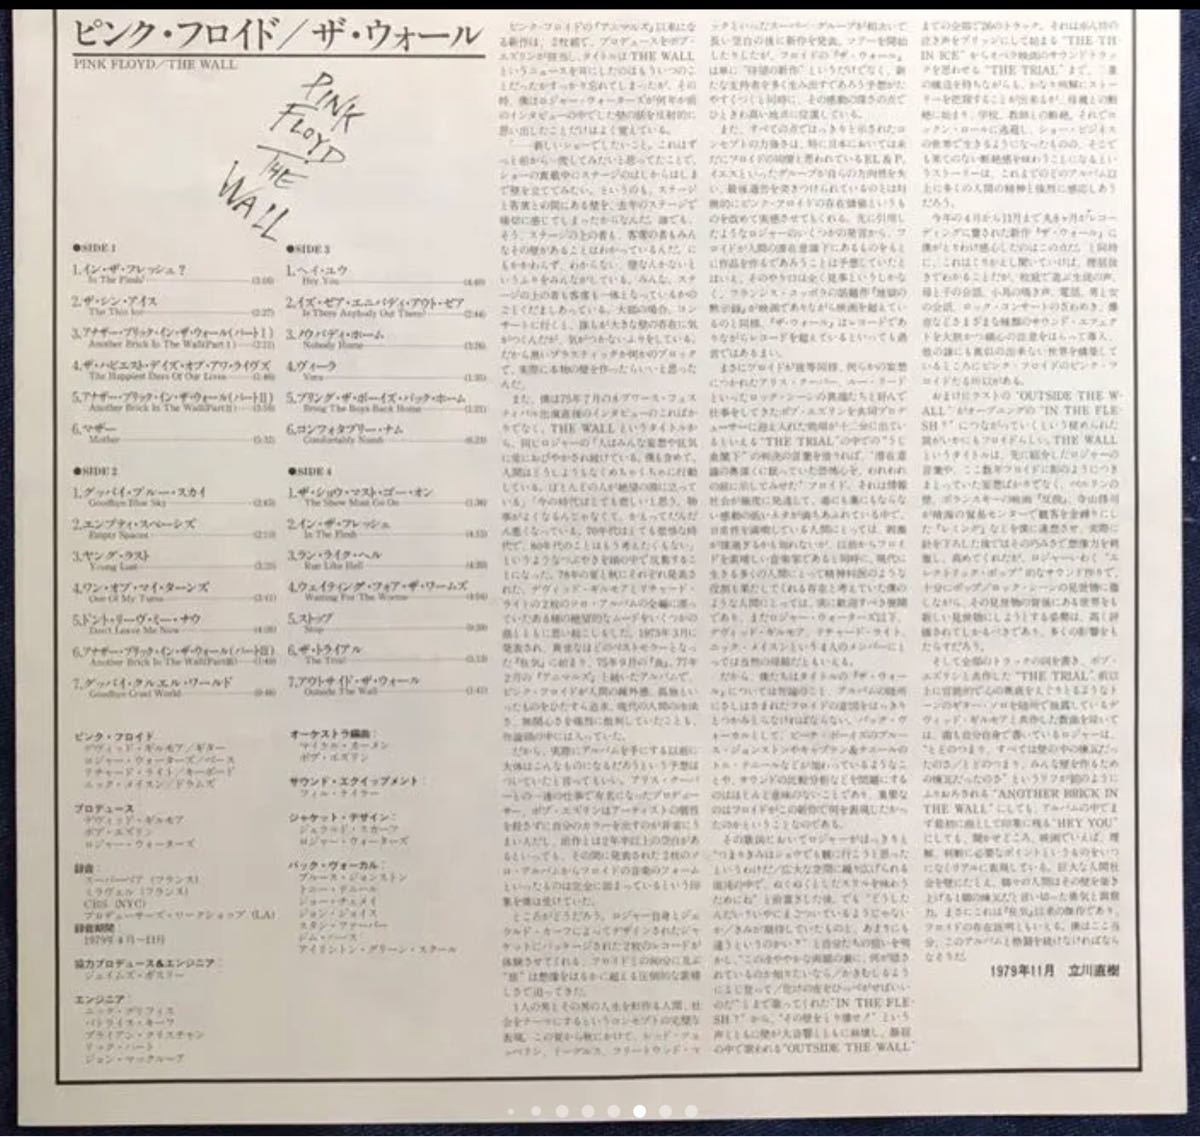 THE WALL ザ・ウォール　ピンクフロイド 日本盤レコード